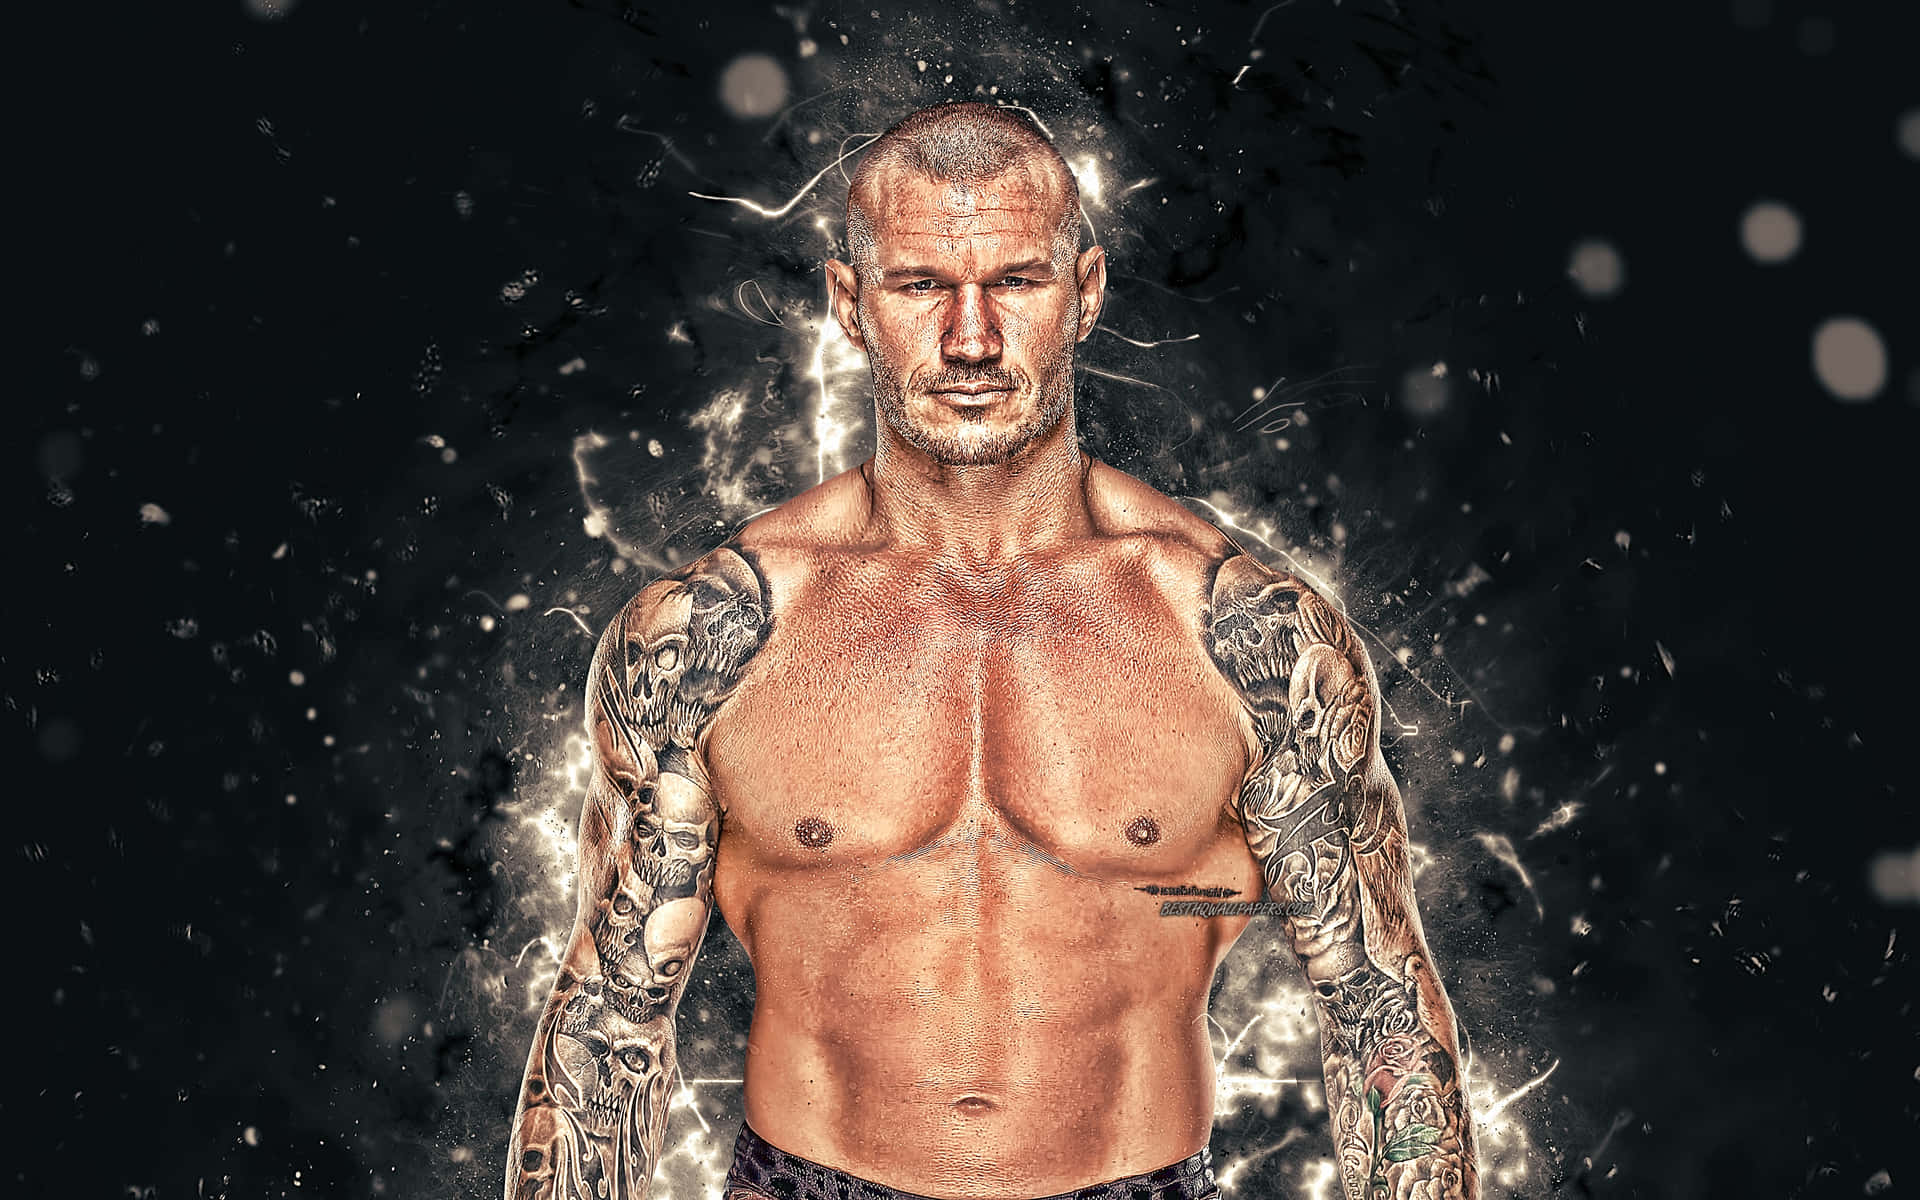 Oastro Da Wwe Randy Orton Exibindo Seu Cinturão De Campeão Como Papel De Parede Para Computador Ou Celular. Papel de Parede